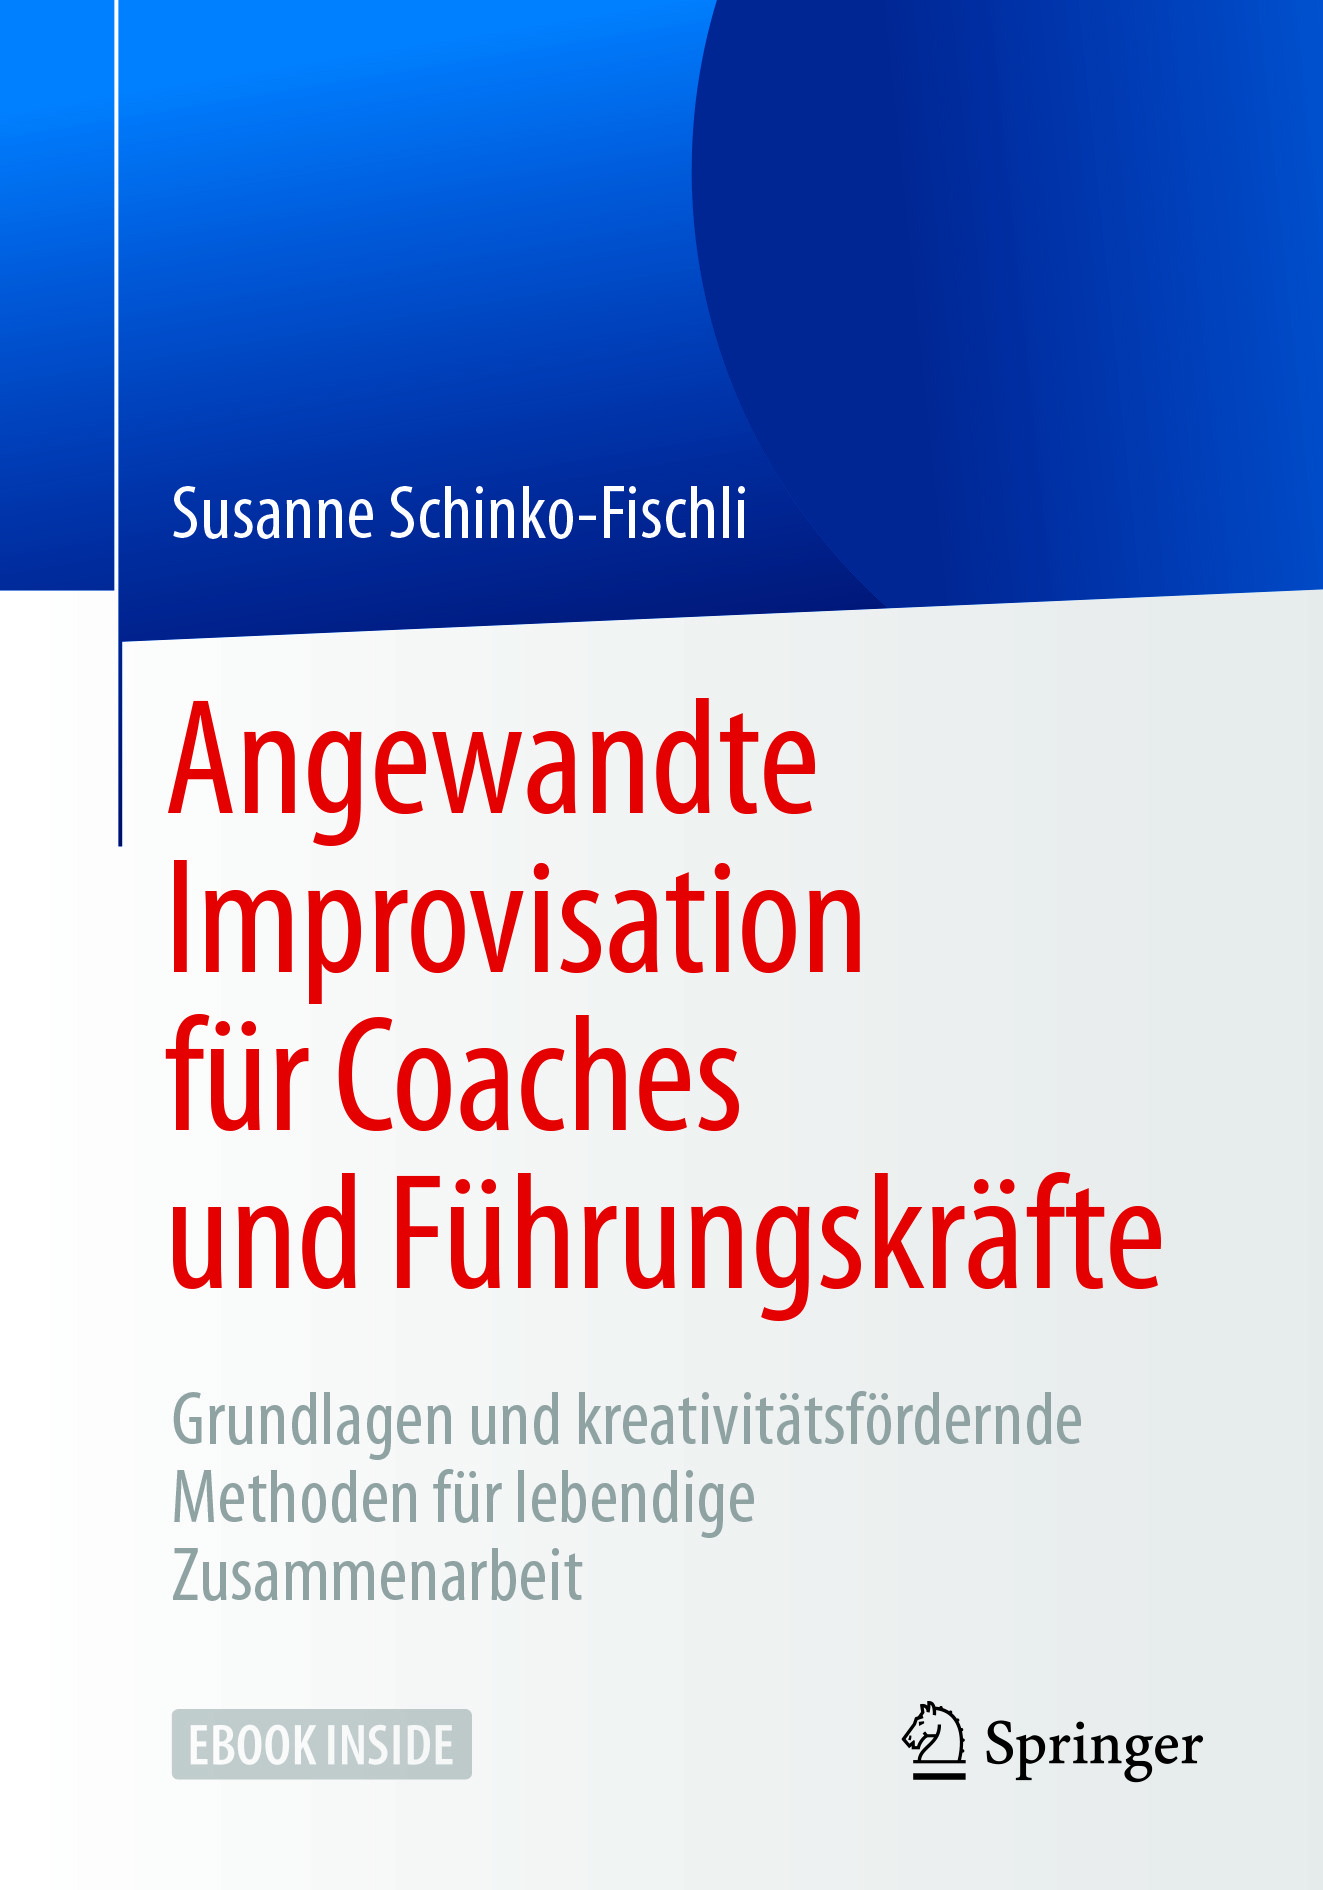 Schinko-Fischli, Susanne - Angewandte Improvisation für Coaches und Führungskräfte, ebook